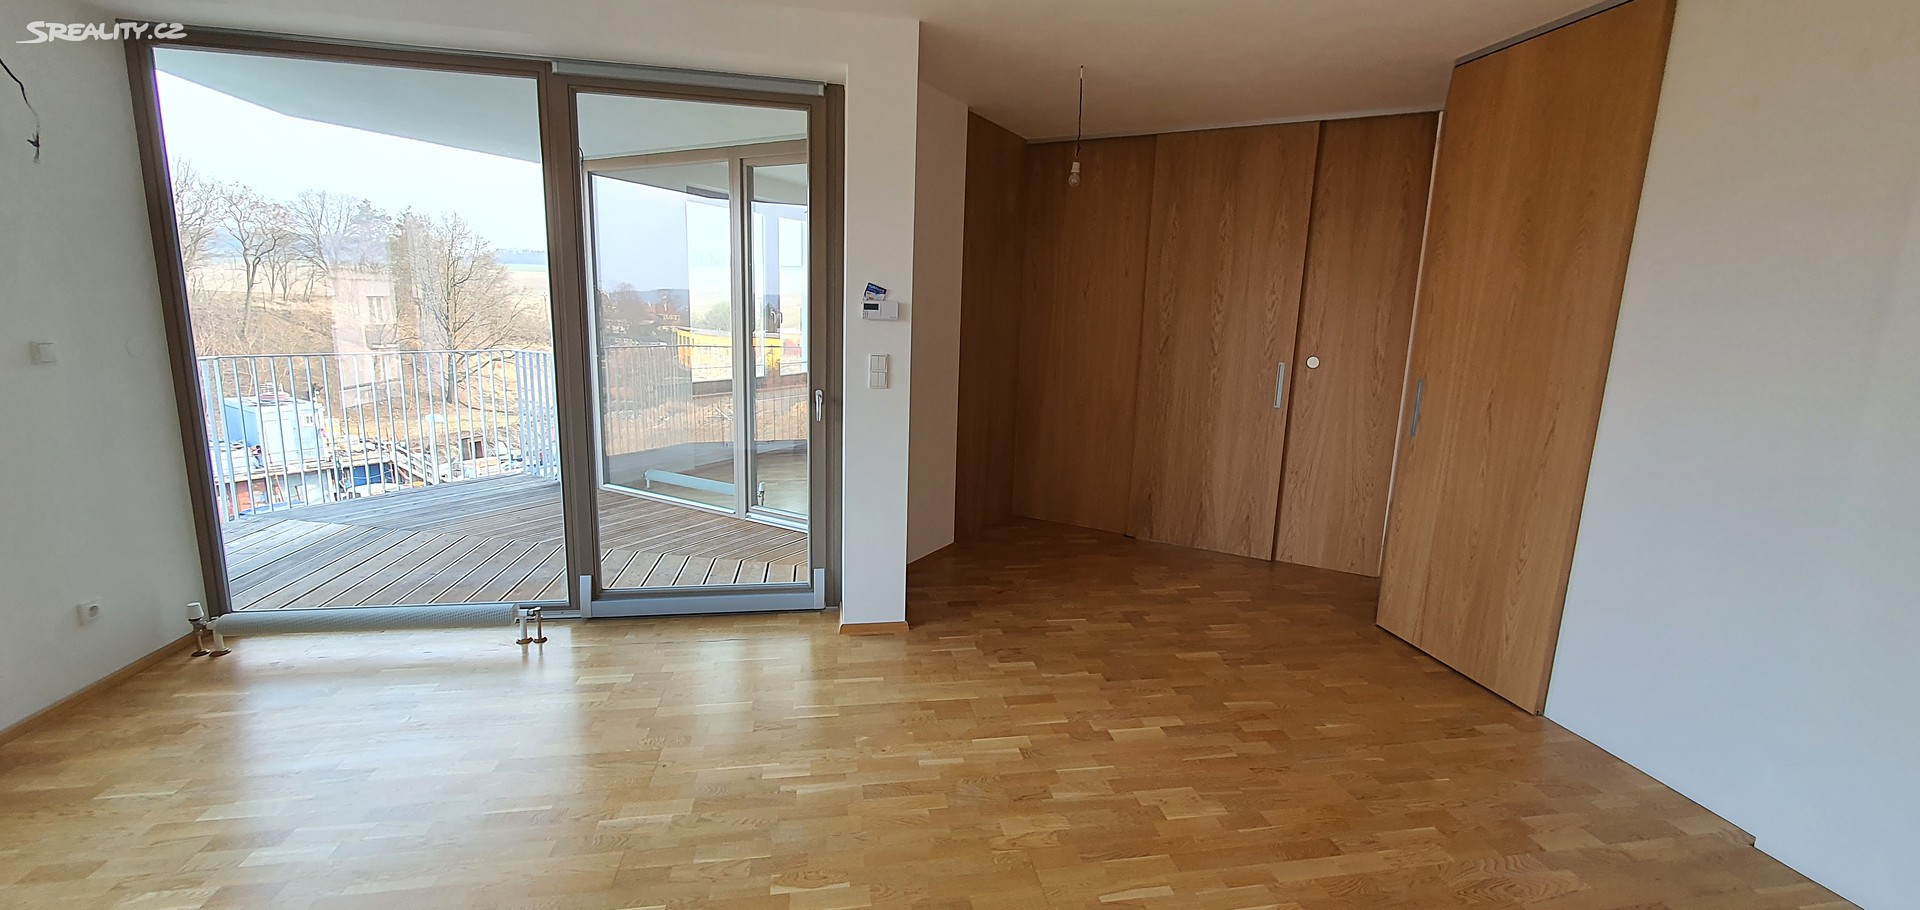 Prodej bytu 2+kk 54 m², Žleby, Střelice